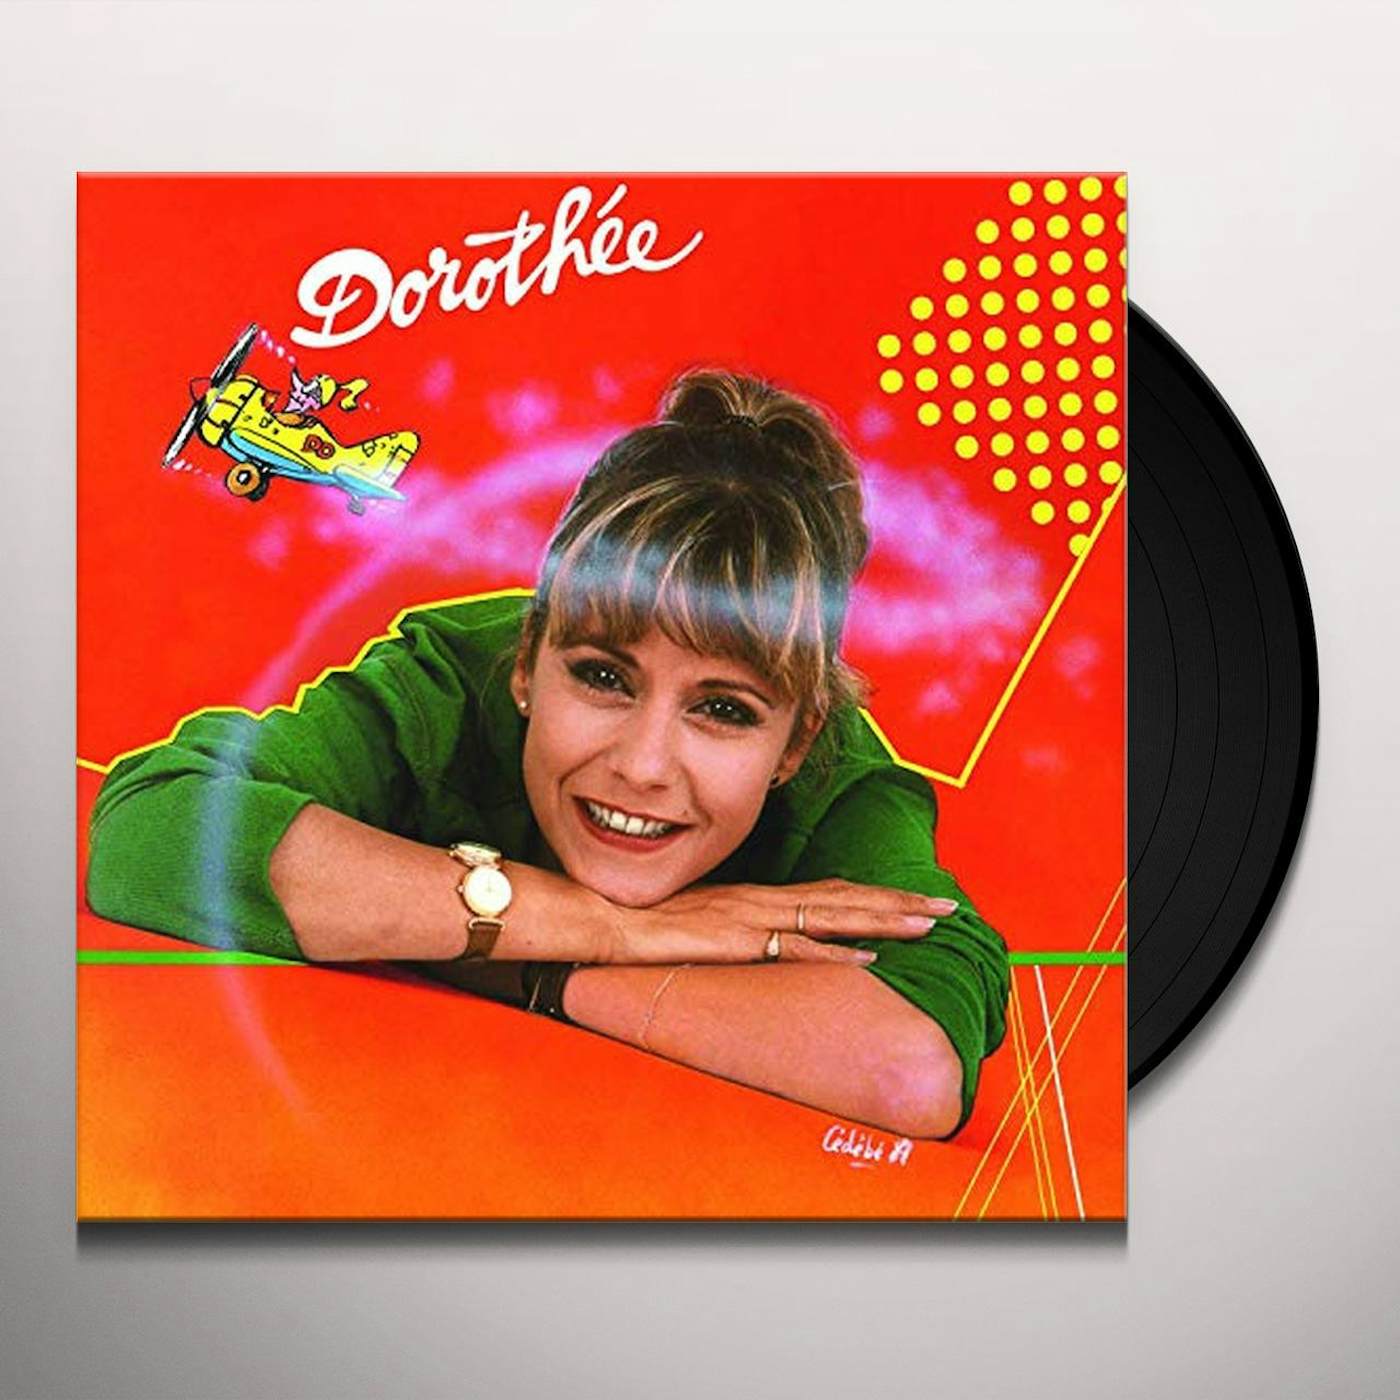 Dorothee Docteur Vinyl Record